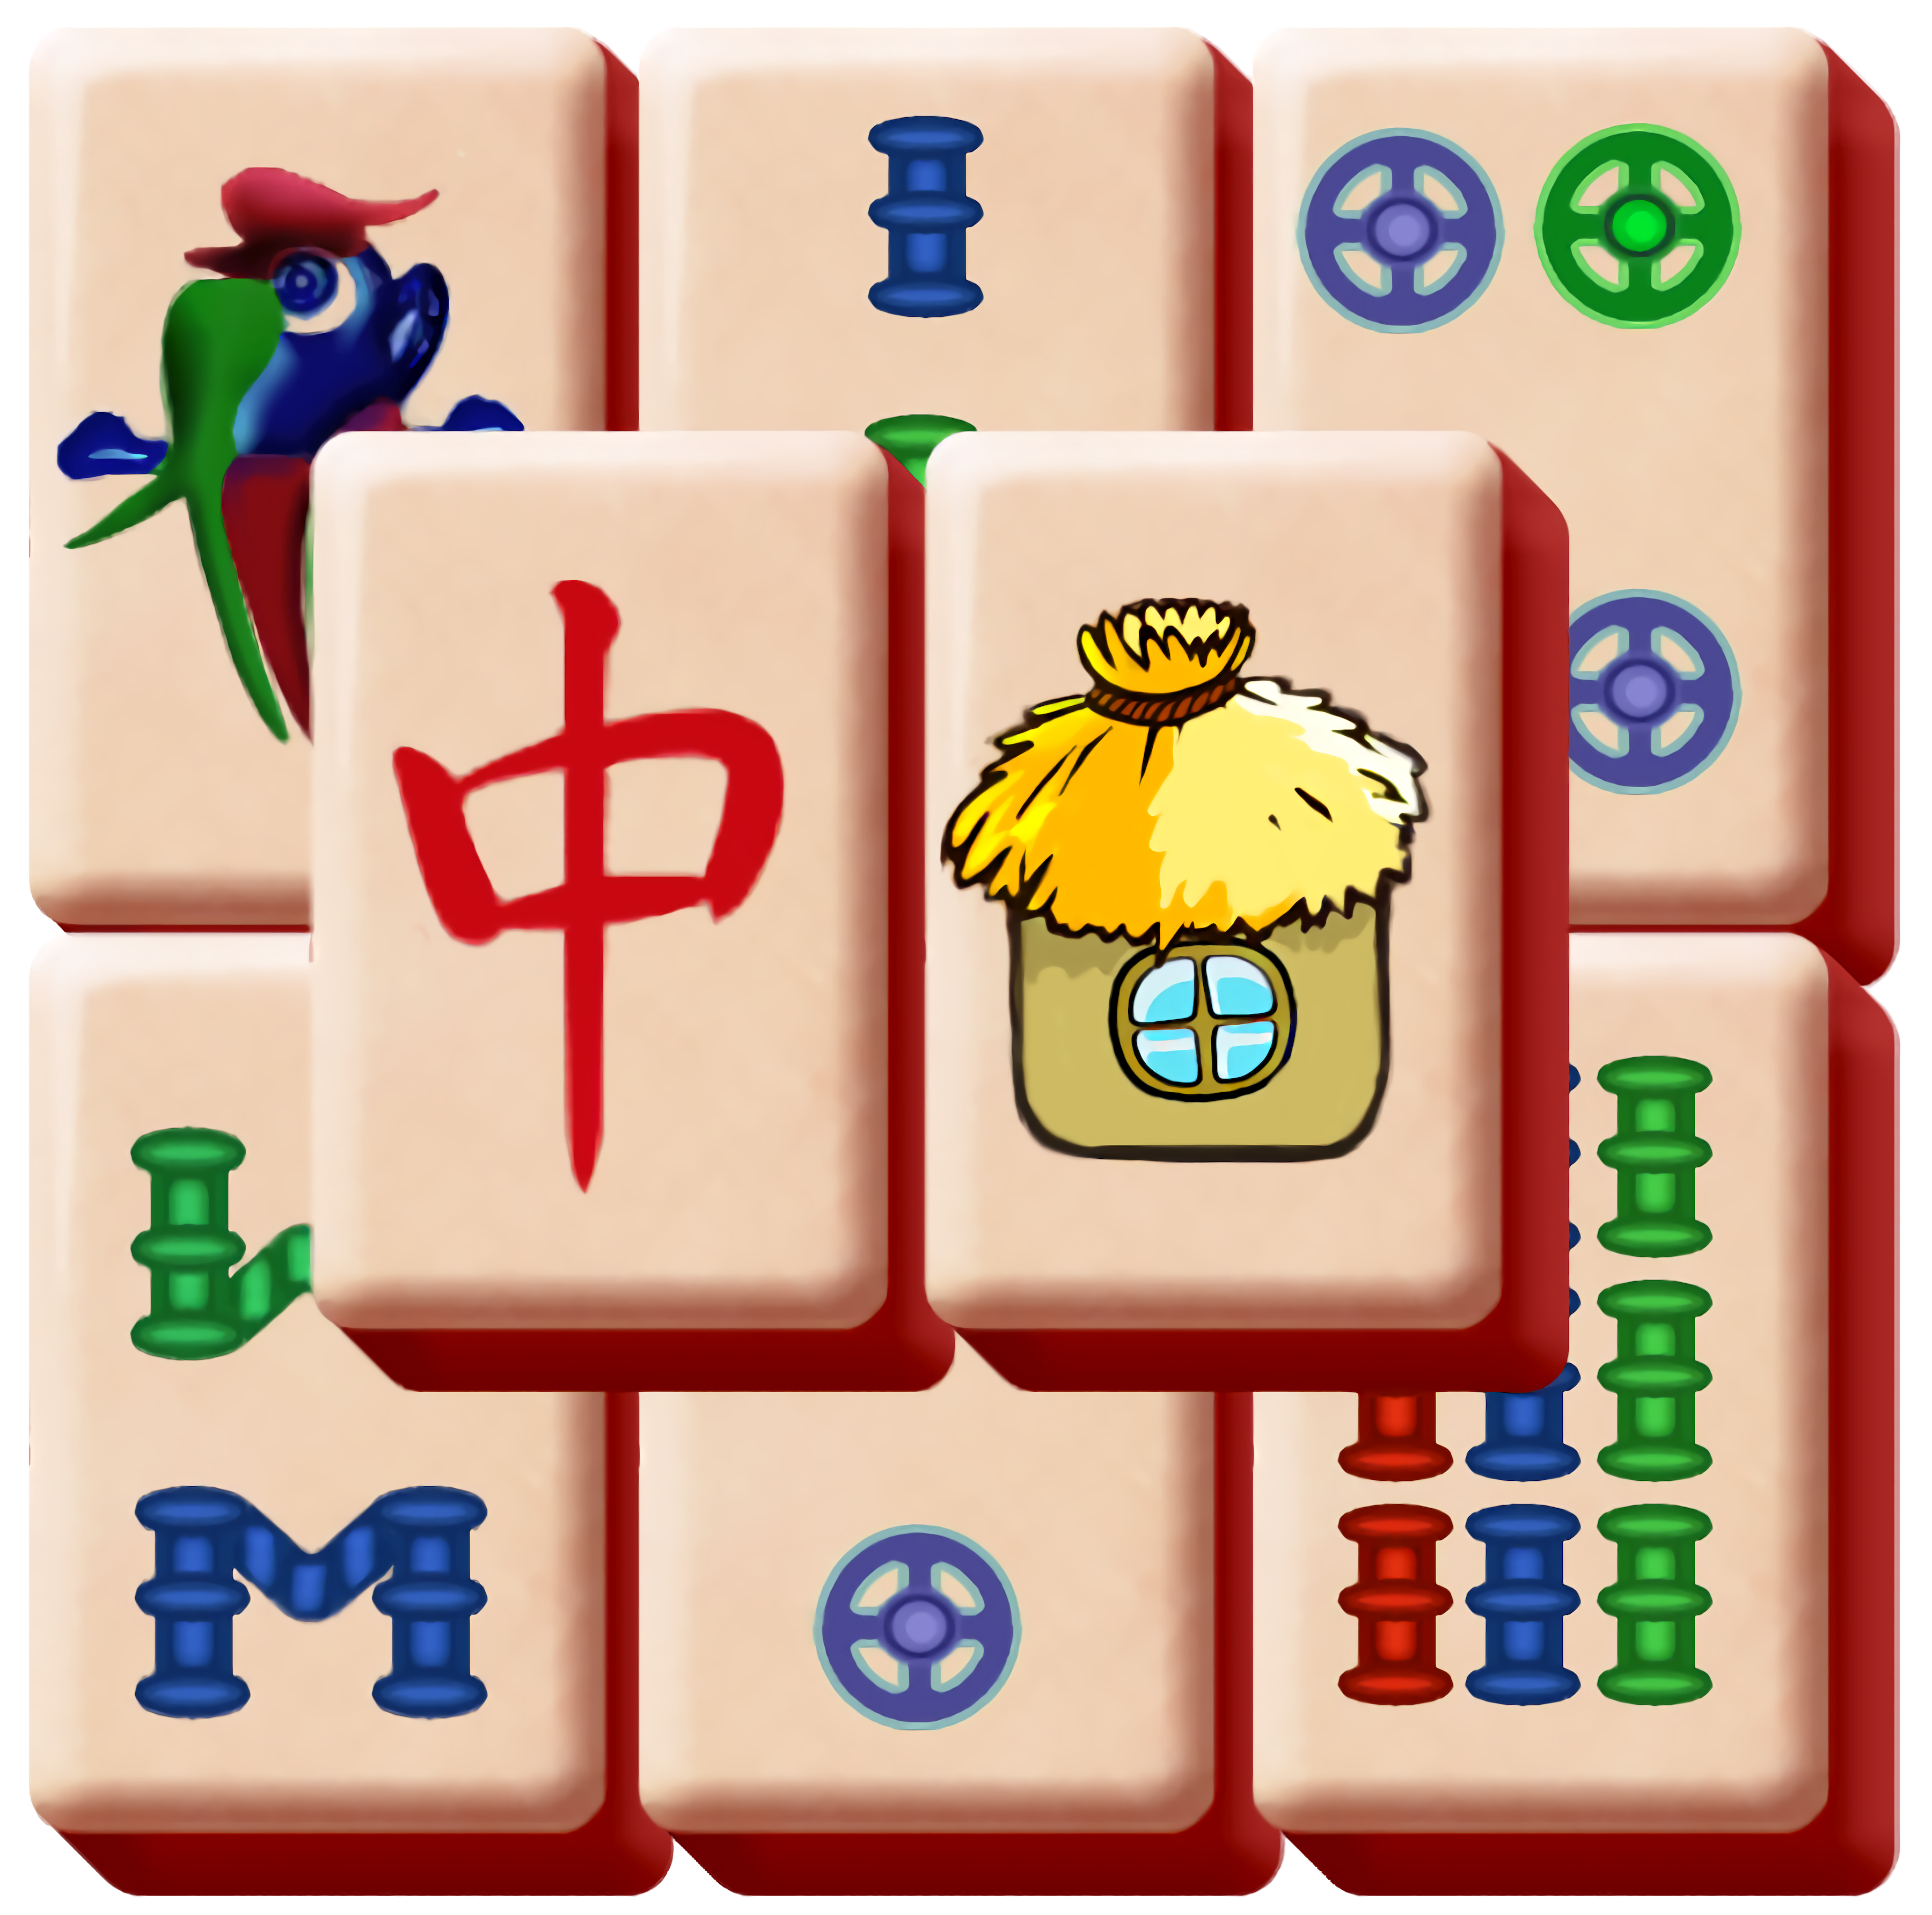 Mahjong Spiele